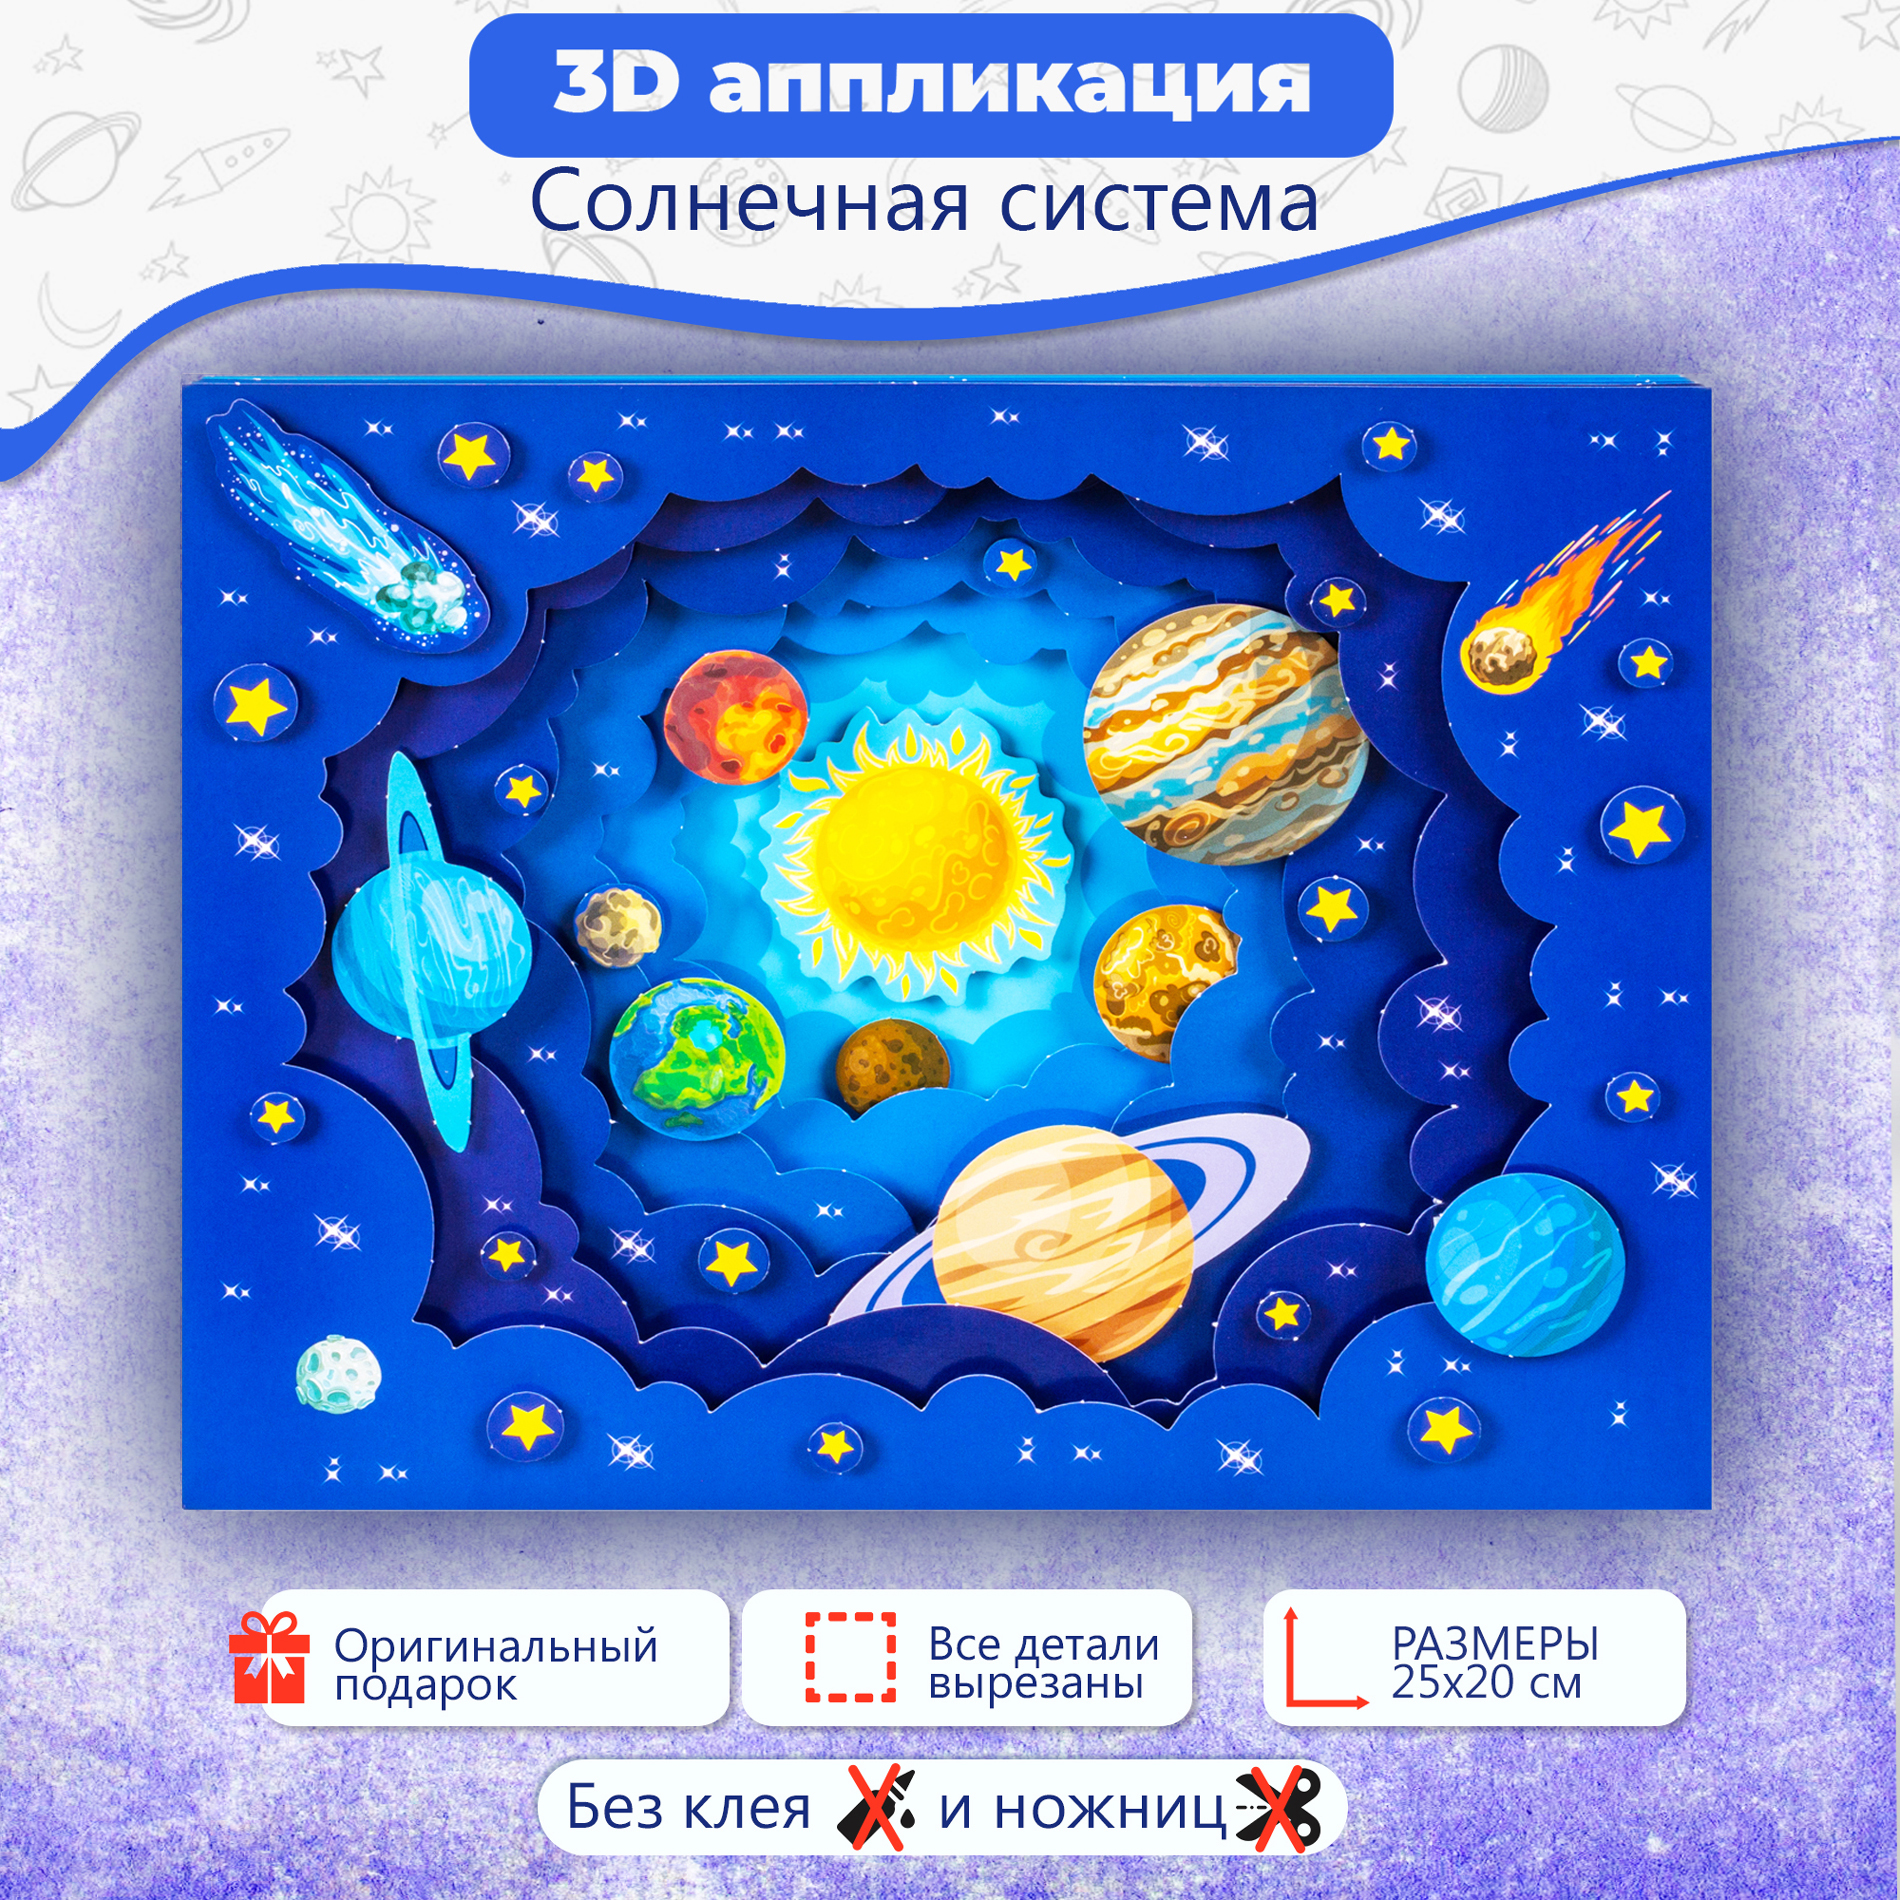 Аппликация Дрофа-Медиа 3Д Солнечная система 4229 - фото 2